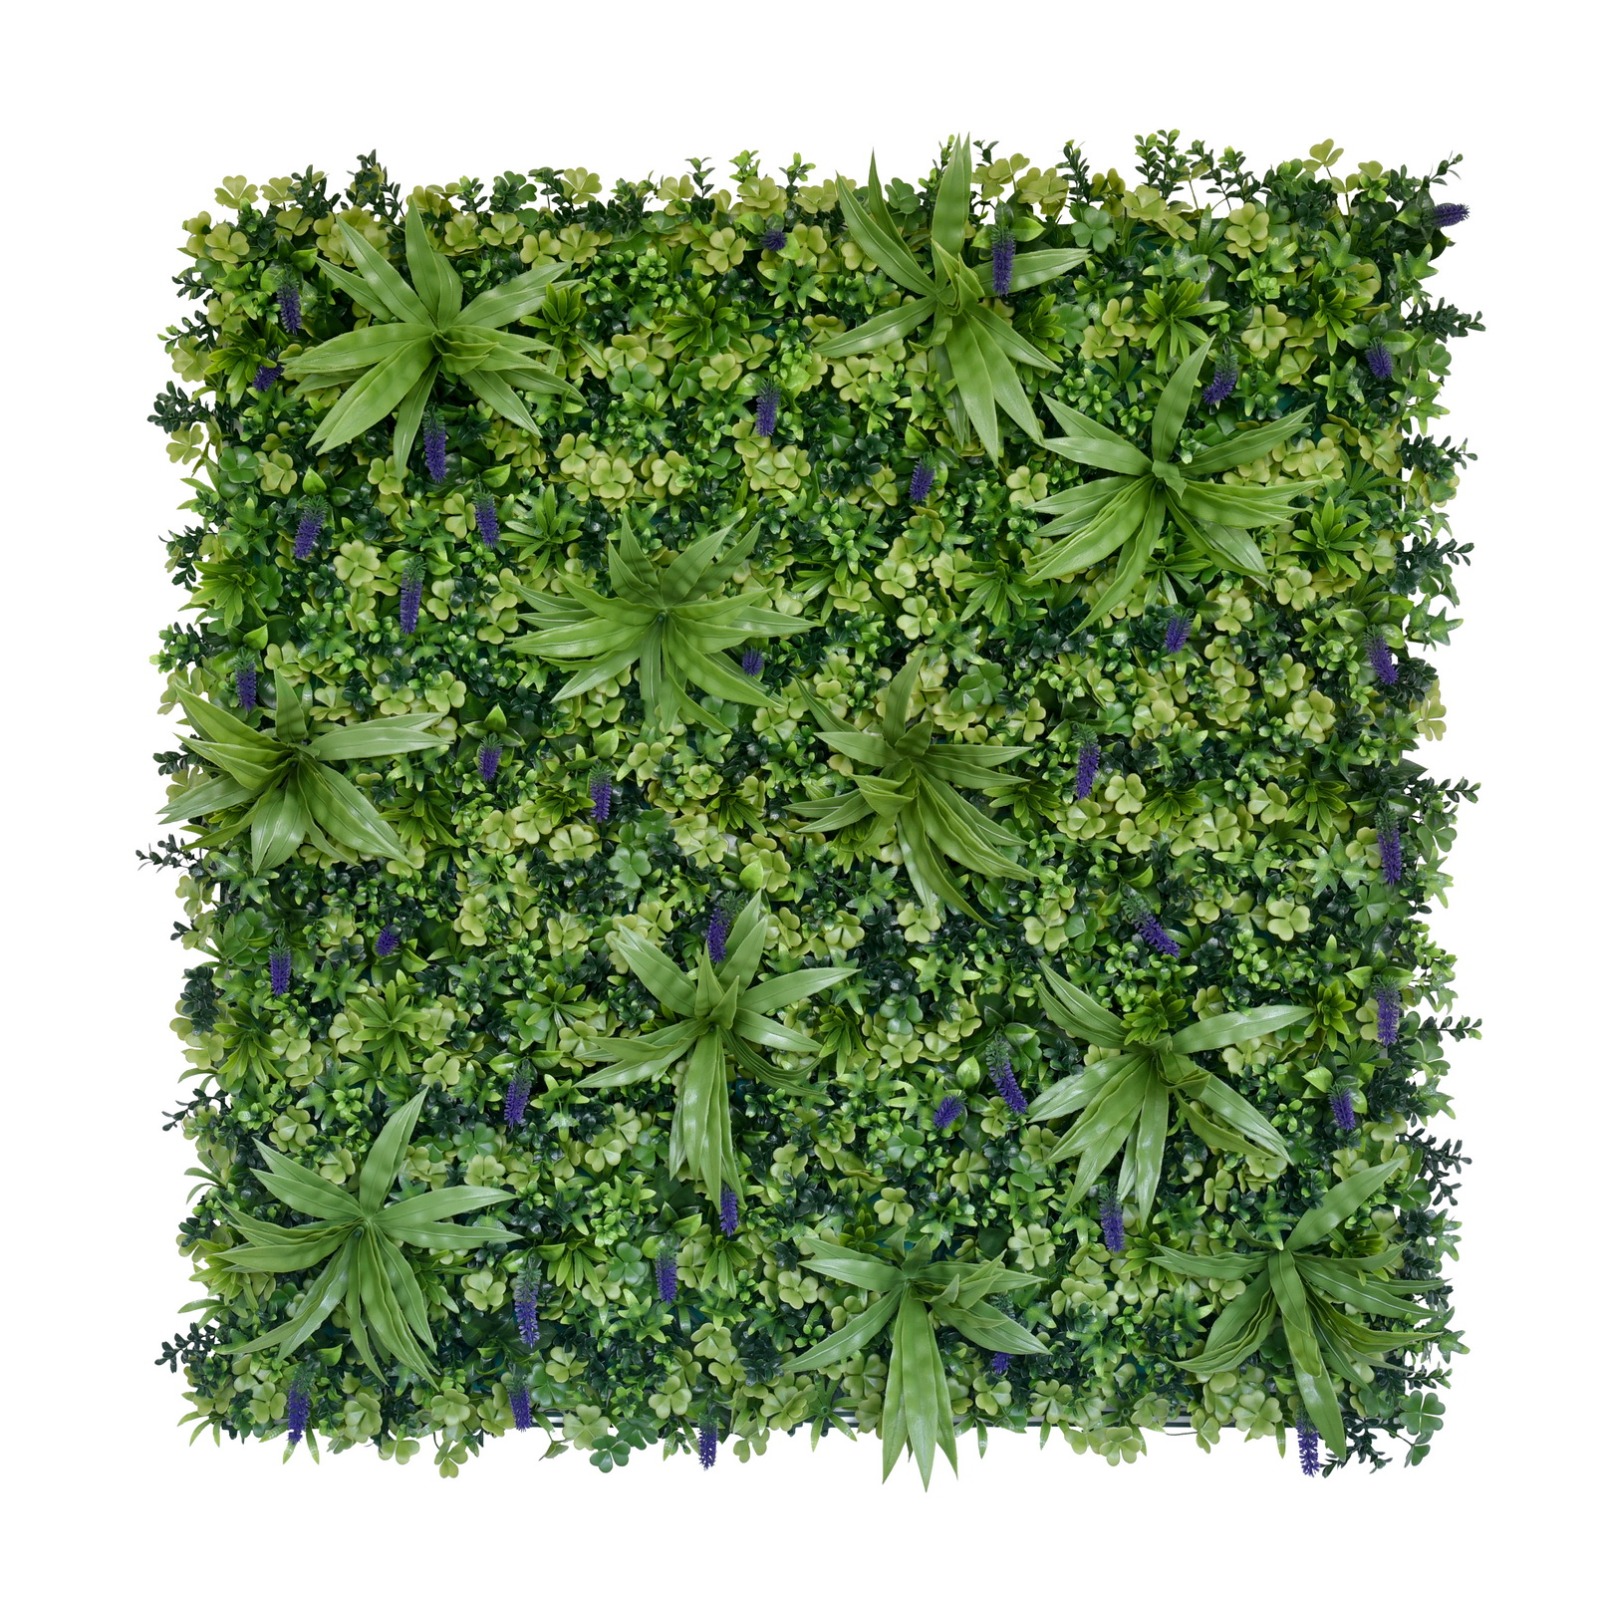 Wall Grass - LUCKY BLOSSOM (1mtr × 1mtr, 10.764sft)